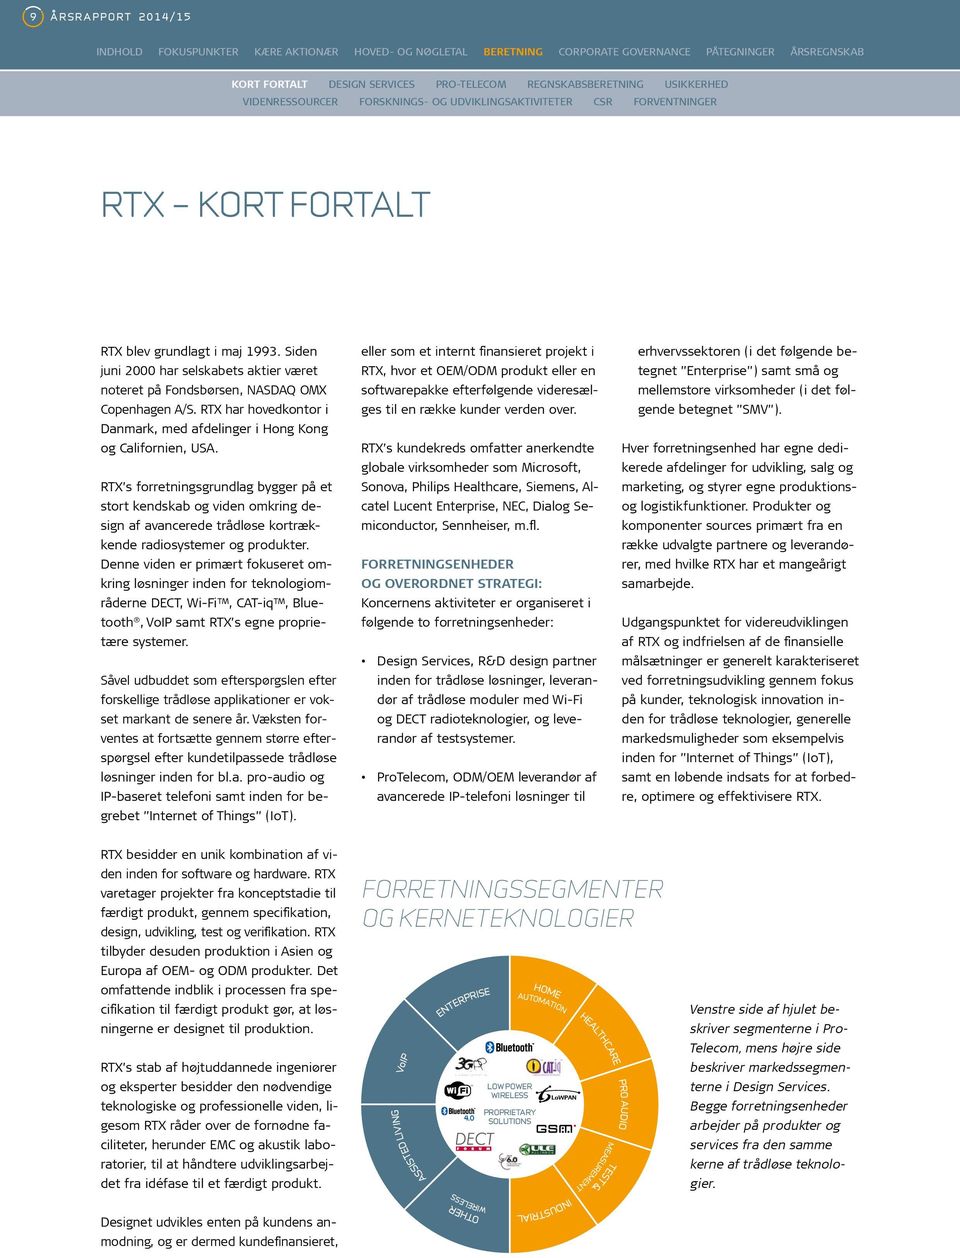 RTX s forretningsgrundlag bygger på et stort kendskab og viden omkring design af avancerede trådløse kortrækkende radiosystemer og produkter.